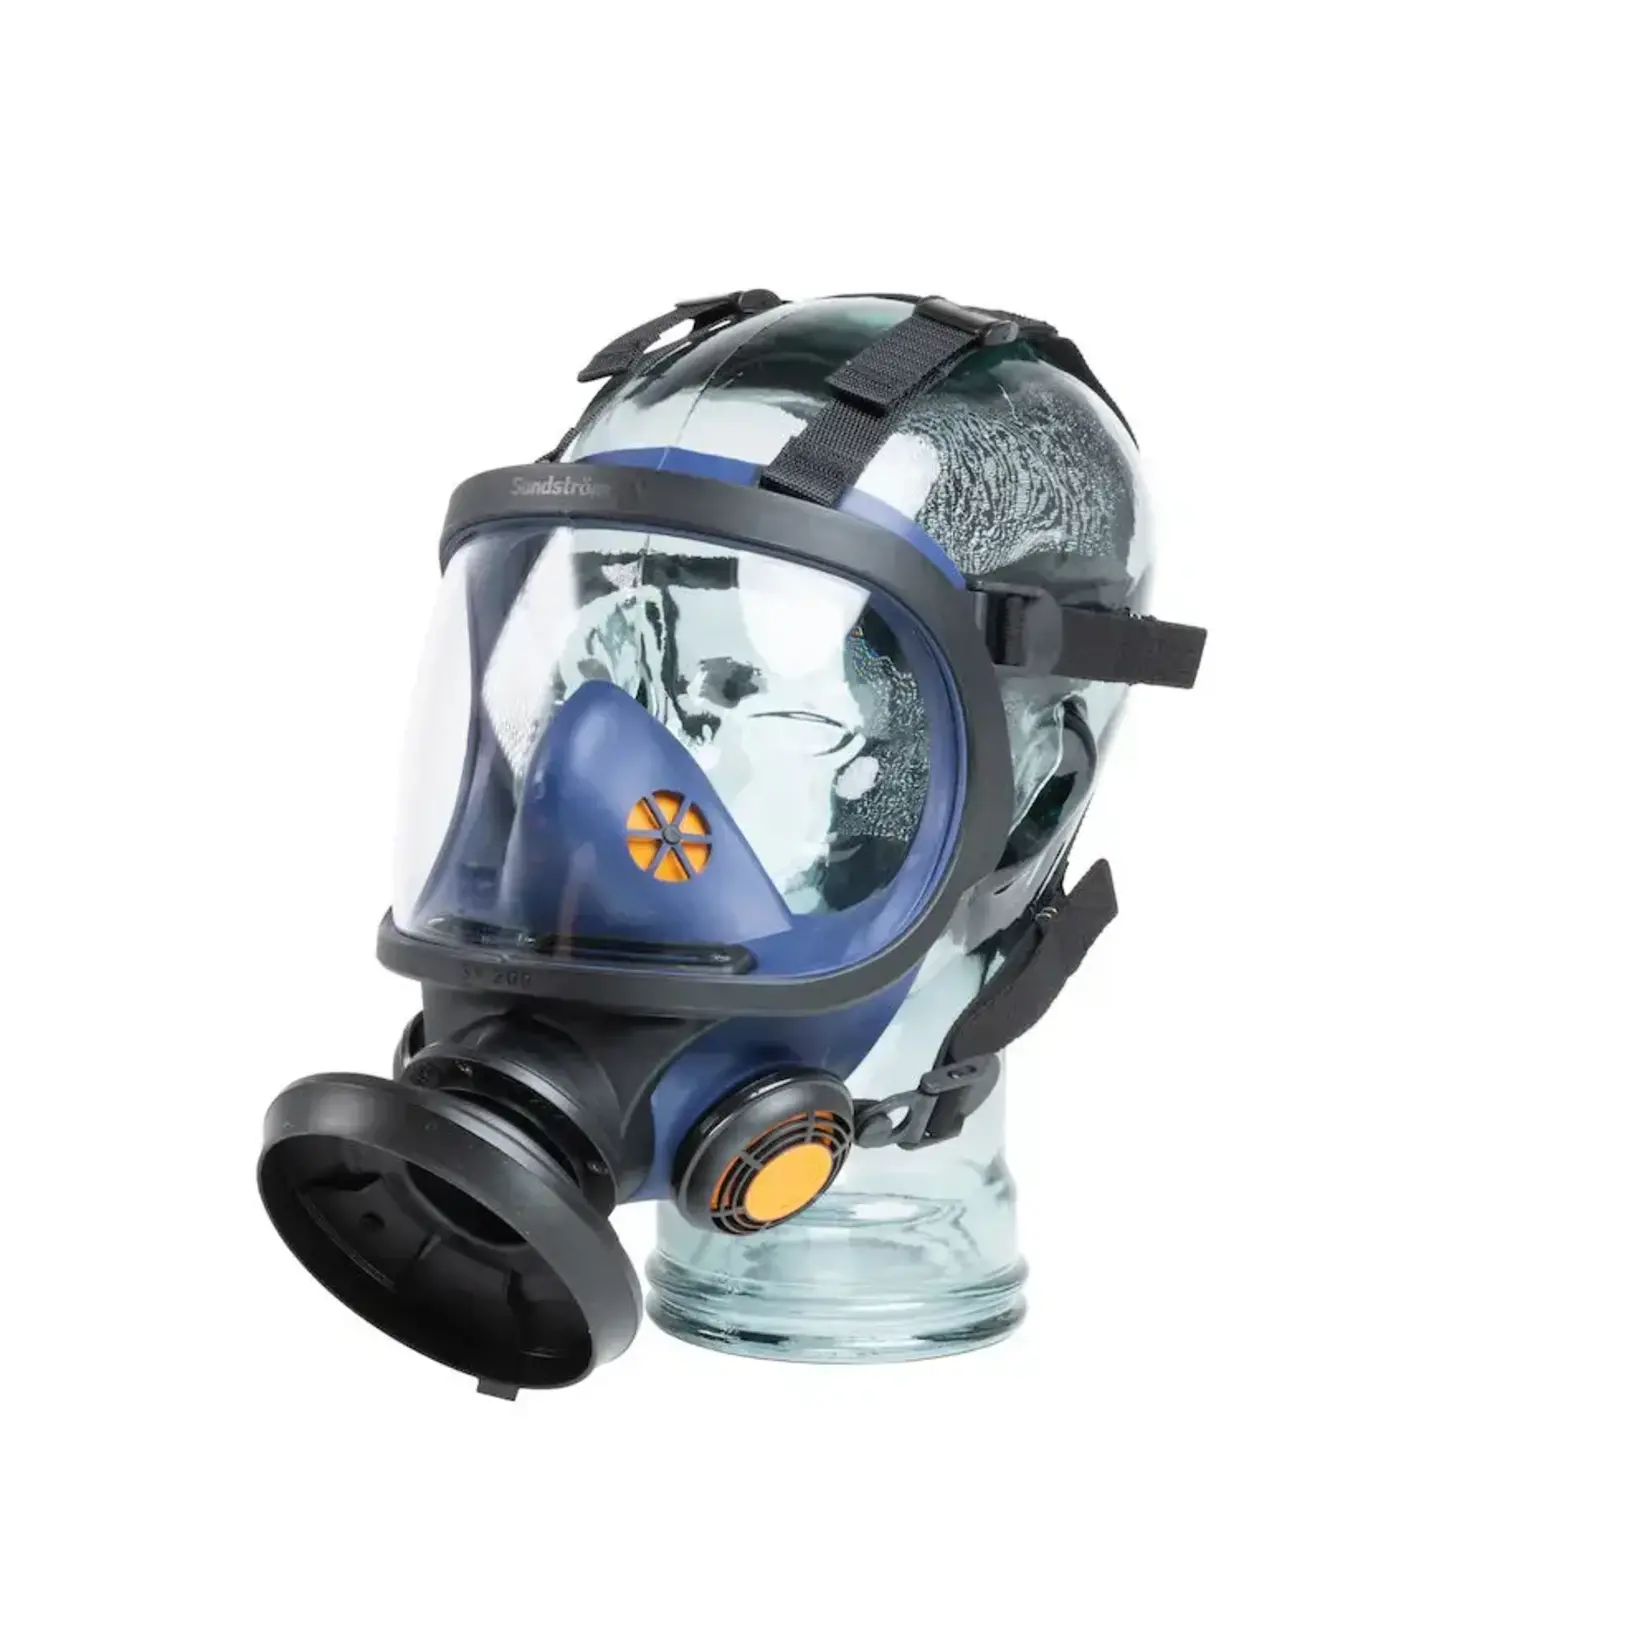 Sundstrom Sundstrom SR200 Full Face Mask Respirator Glass